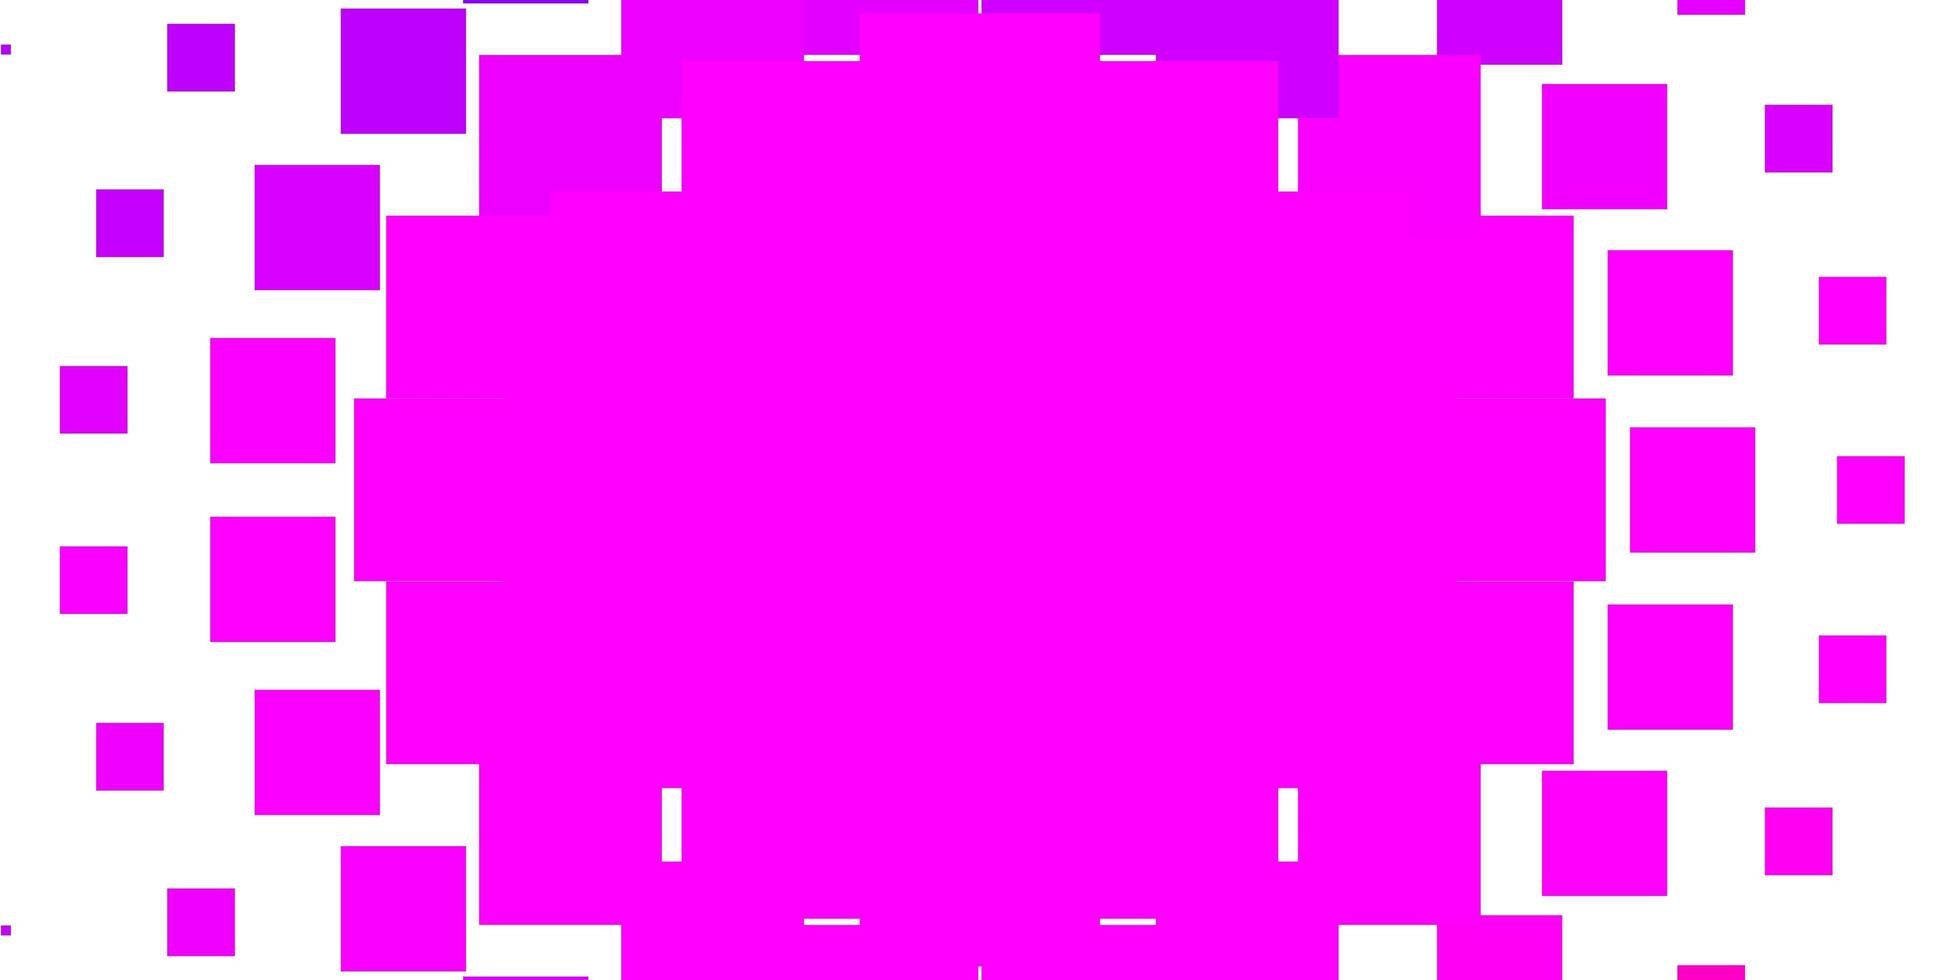 Fondo de vector rosa púrpura claro en estilo poligonal diseño moderno con rectángulos en estilo abstracto mejor diseño para su banner de cartel publicitario